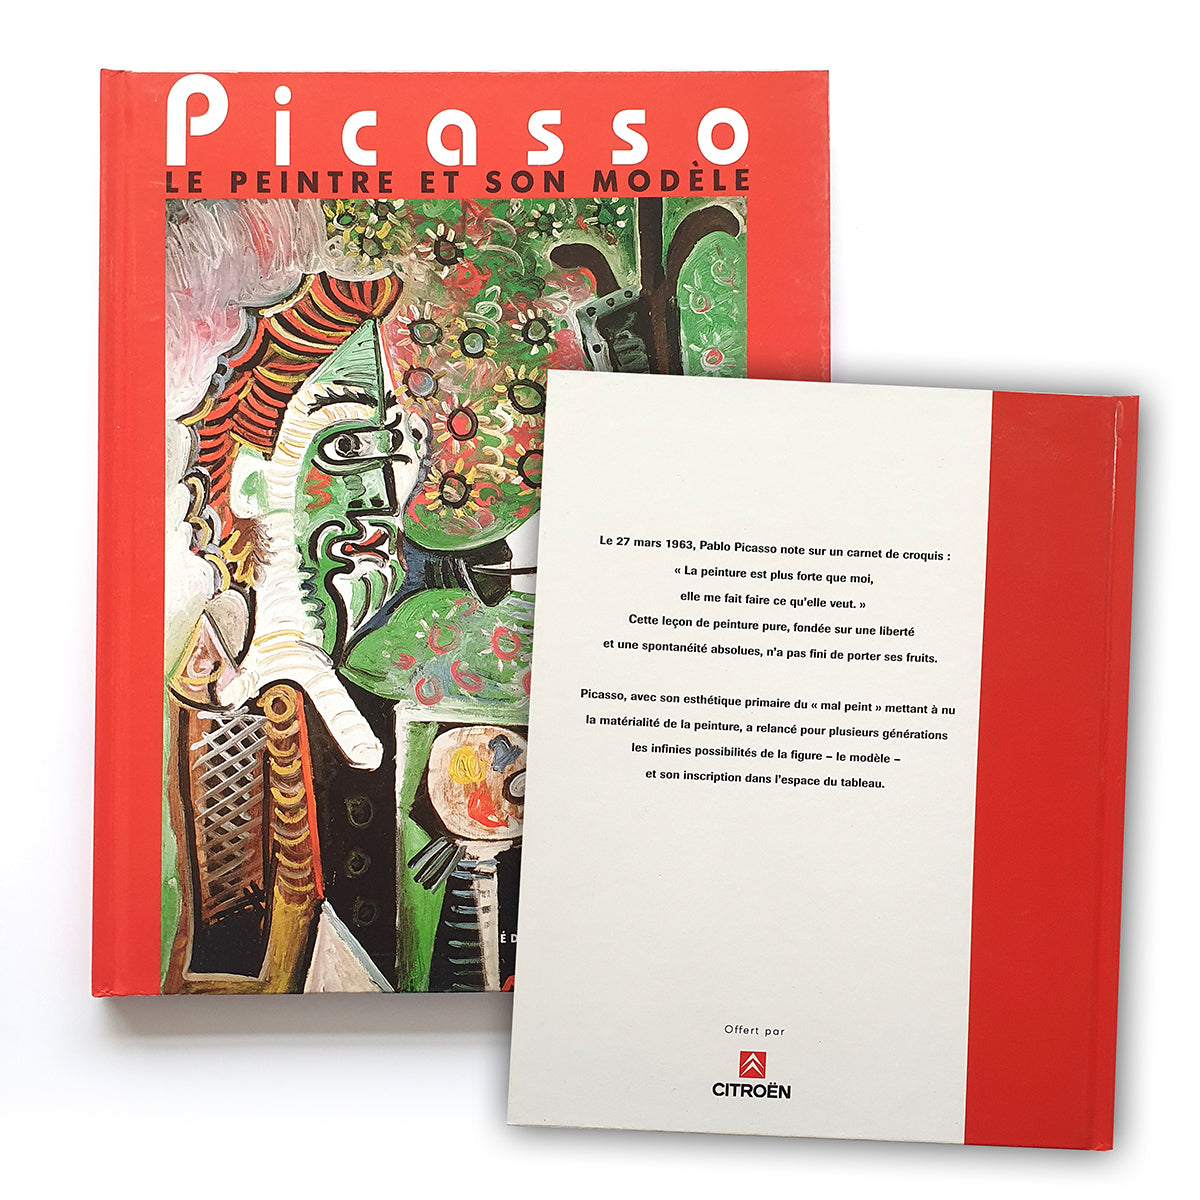 【日本盤】Picasso、Le peintre et son modele、希少画集より、新品額装付 人物画